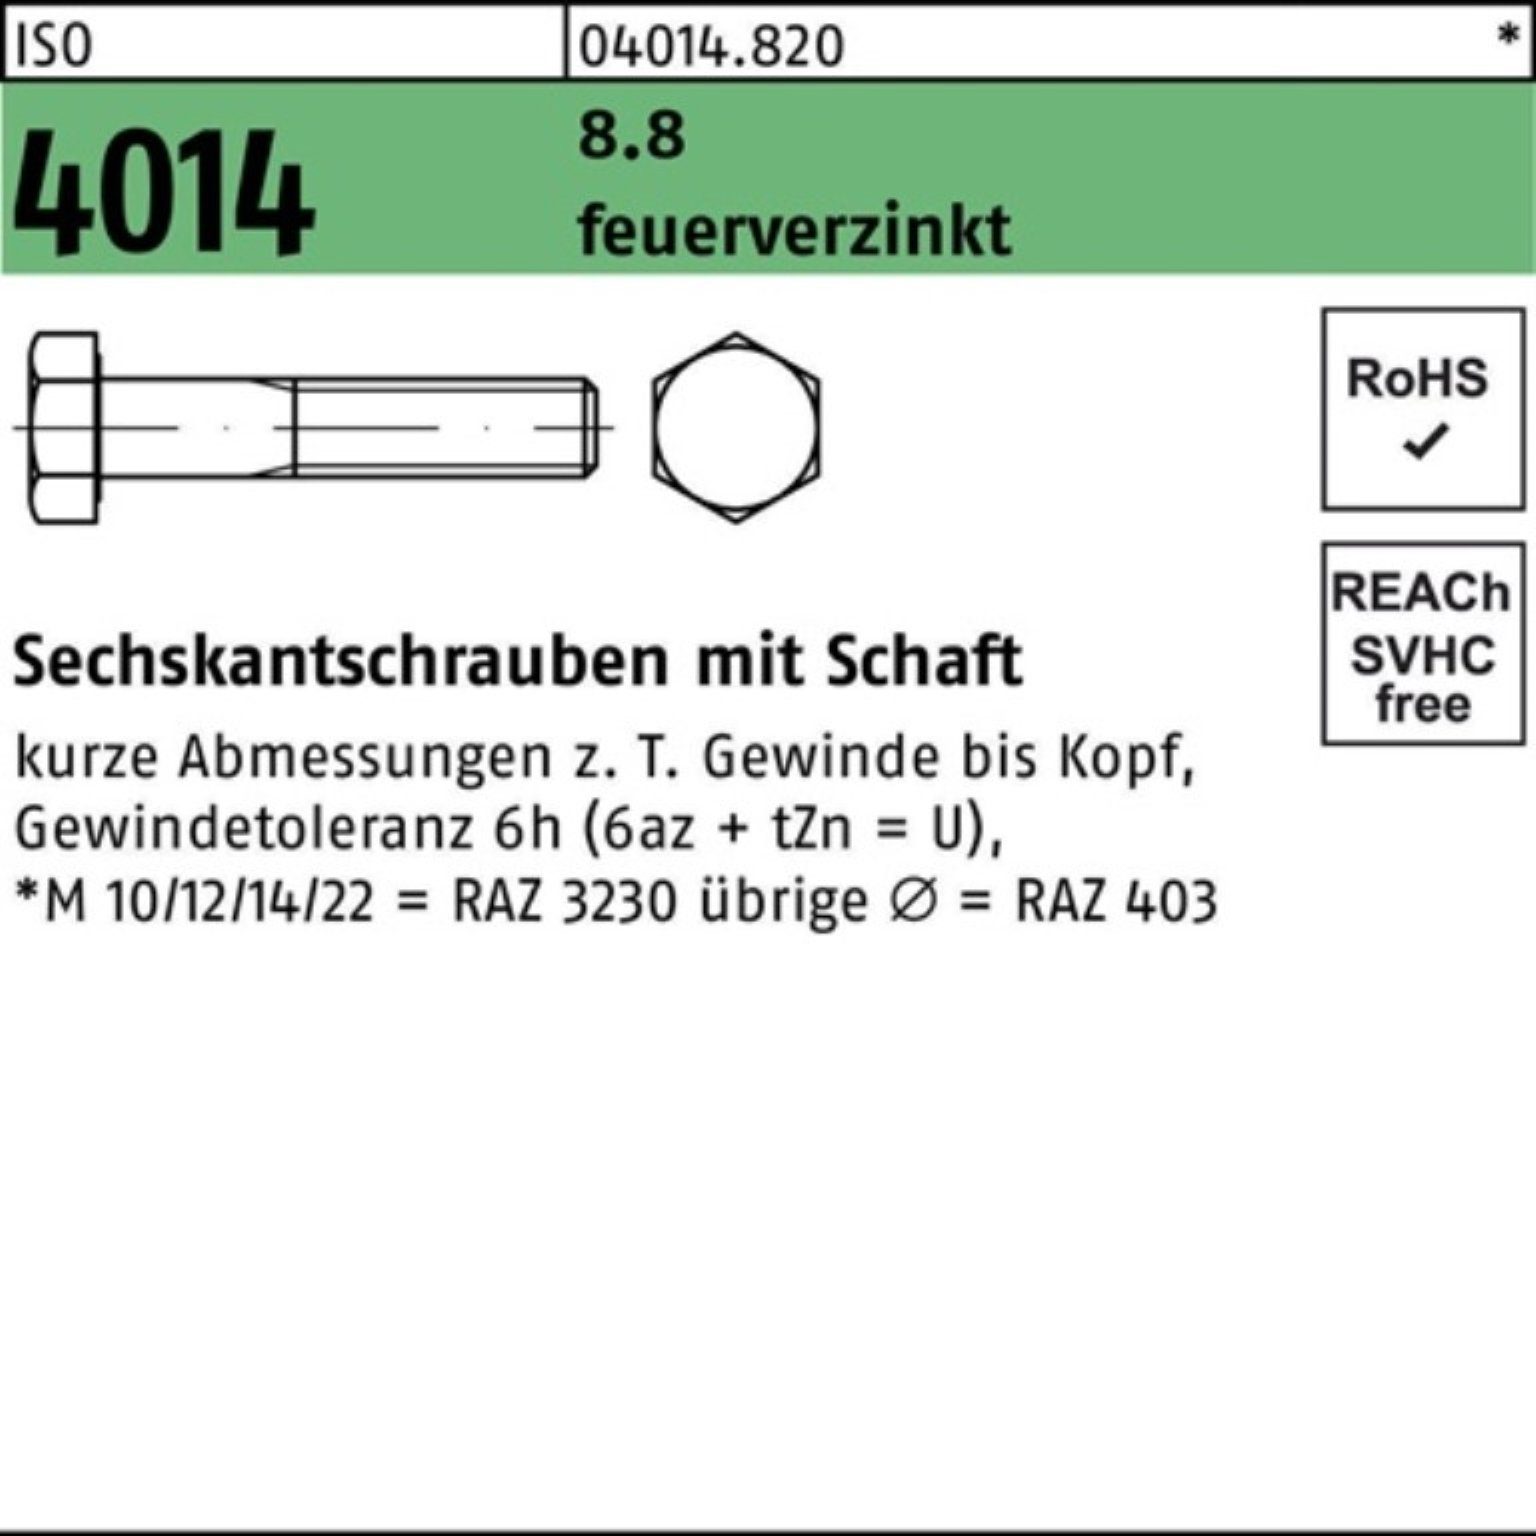 Bufab Sechskantschraube 100er Pack Sechskantschraube ISO 4014 Schaft M27x 180 8.8 feuerverz. 1